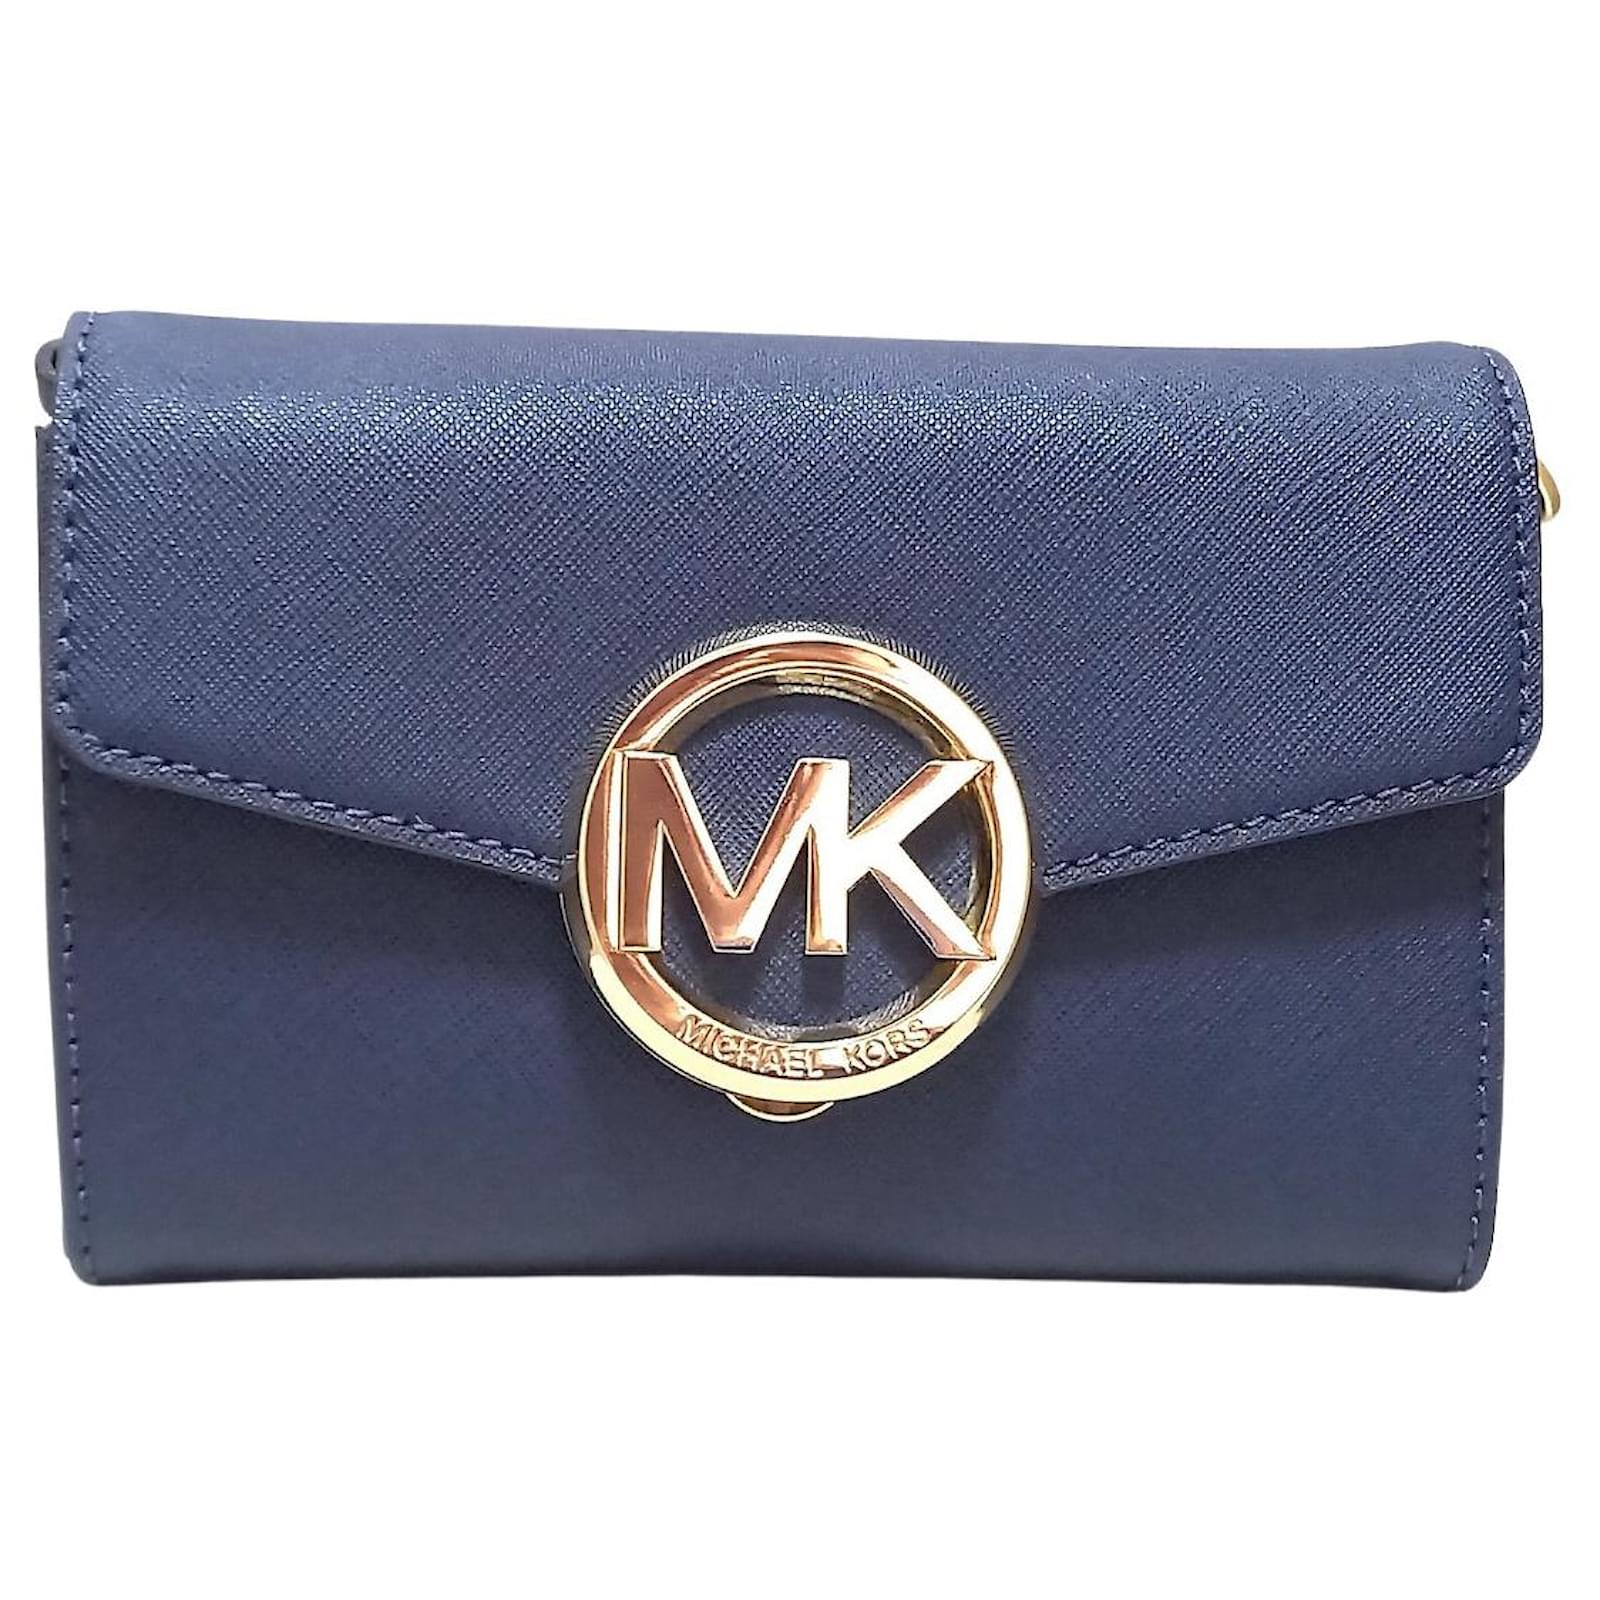 Michael Kors wallet Navy blue Leather  - Joli Closet